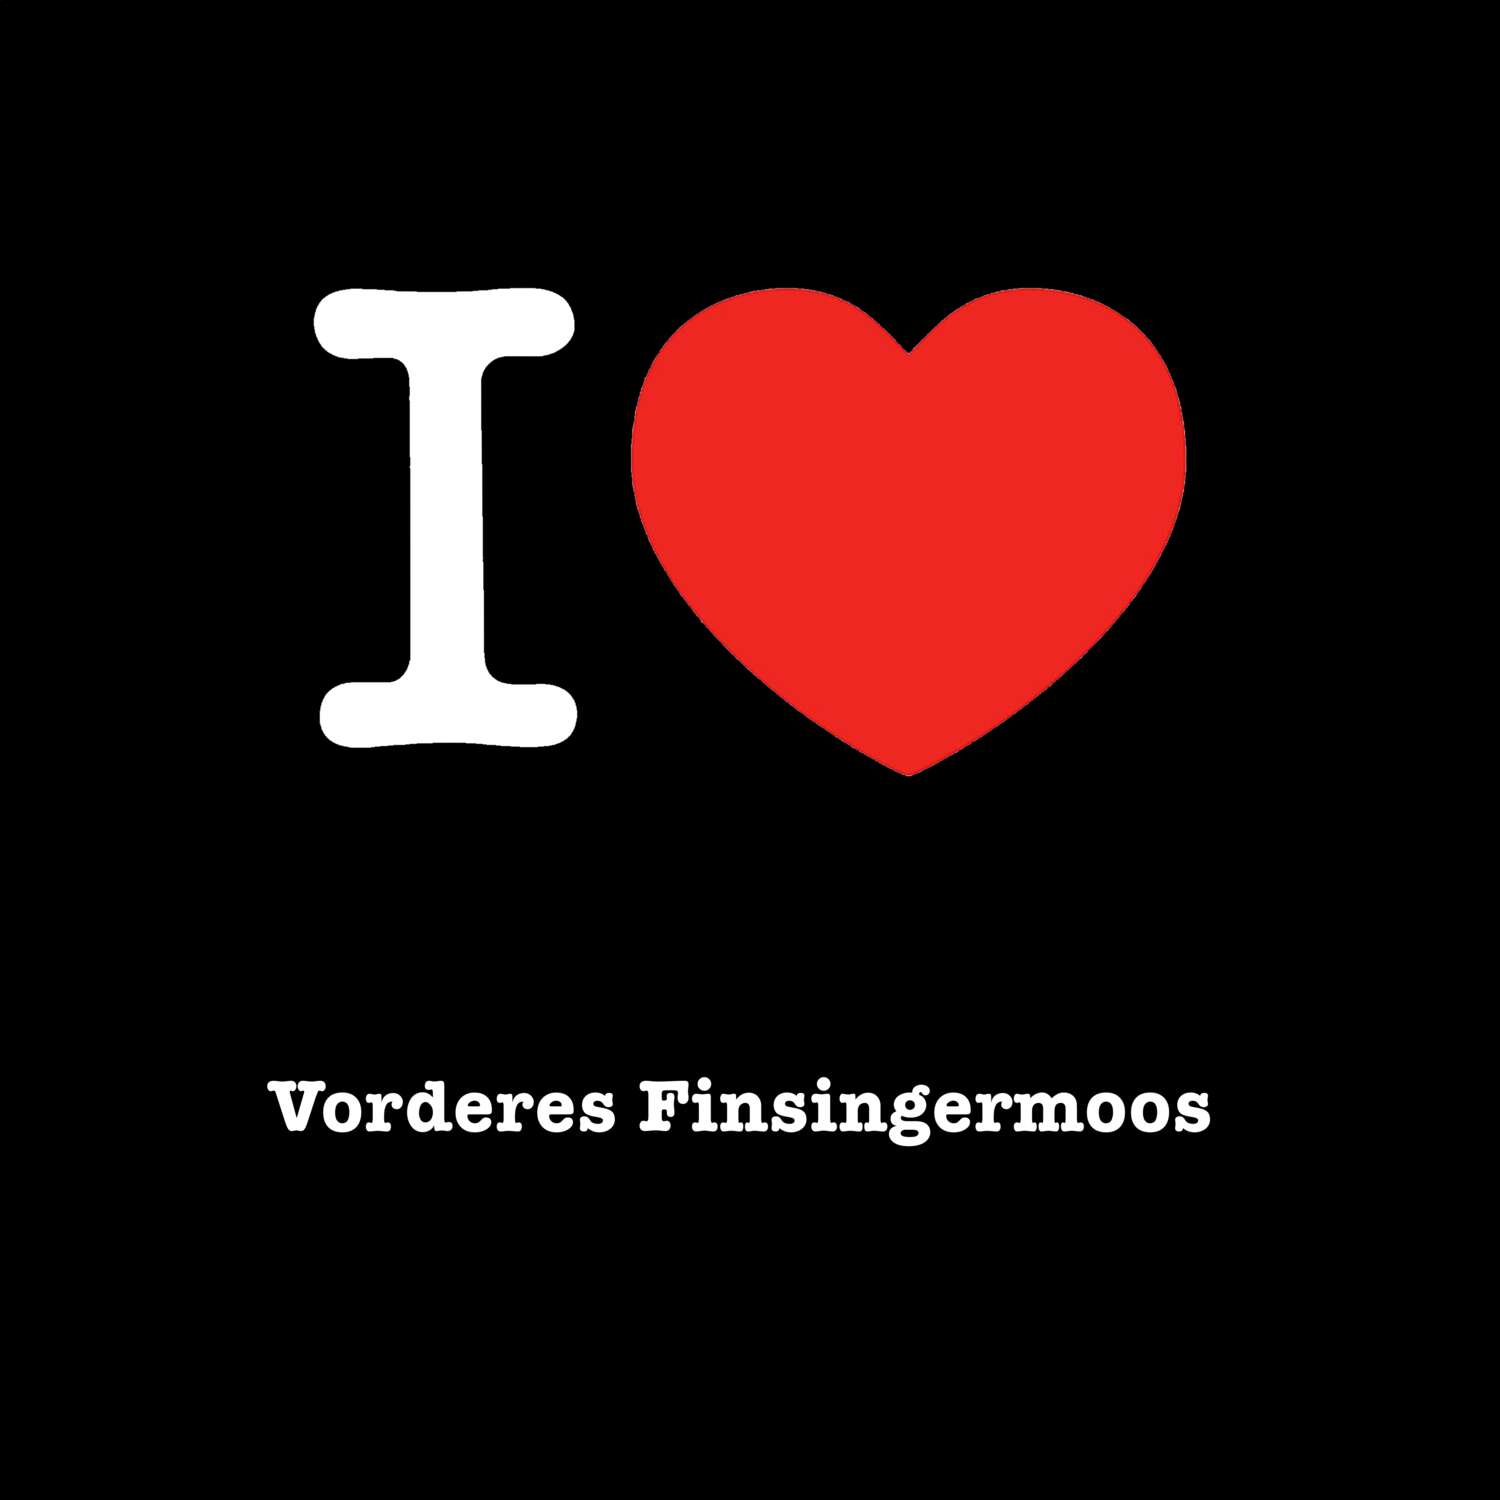 Vorderes Finsingermoos T-Shirt »I love«